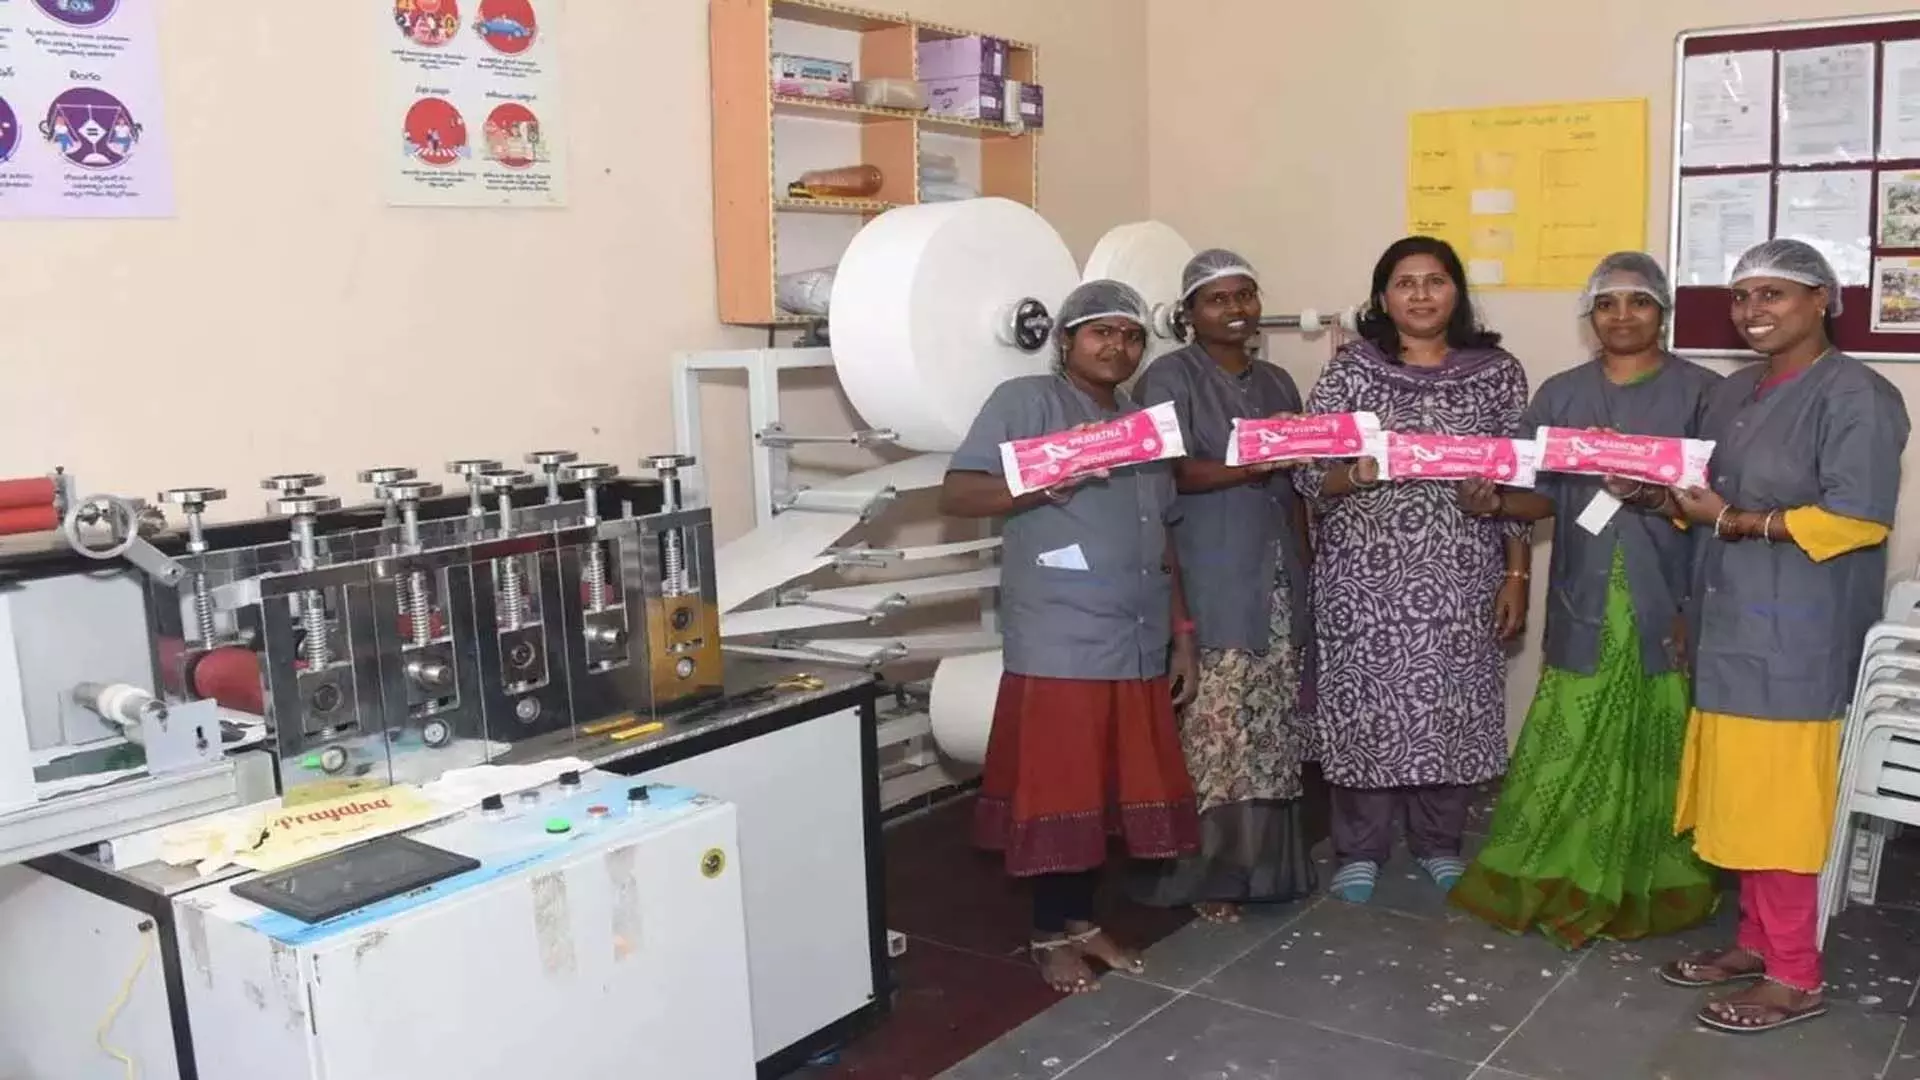 सहायता समूह की 4 महिलाएं हैदराबाद में करती हैं प्रति घंटे 1200 बायोडिग्रेडेबल सेनेटरी नैपकिन का निर्माण